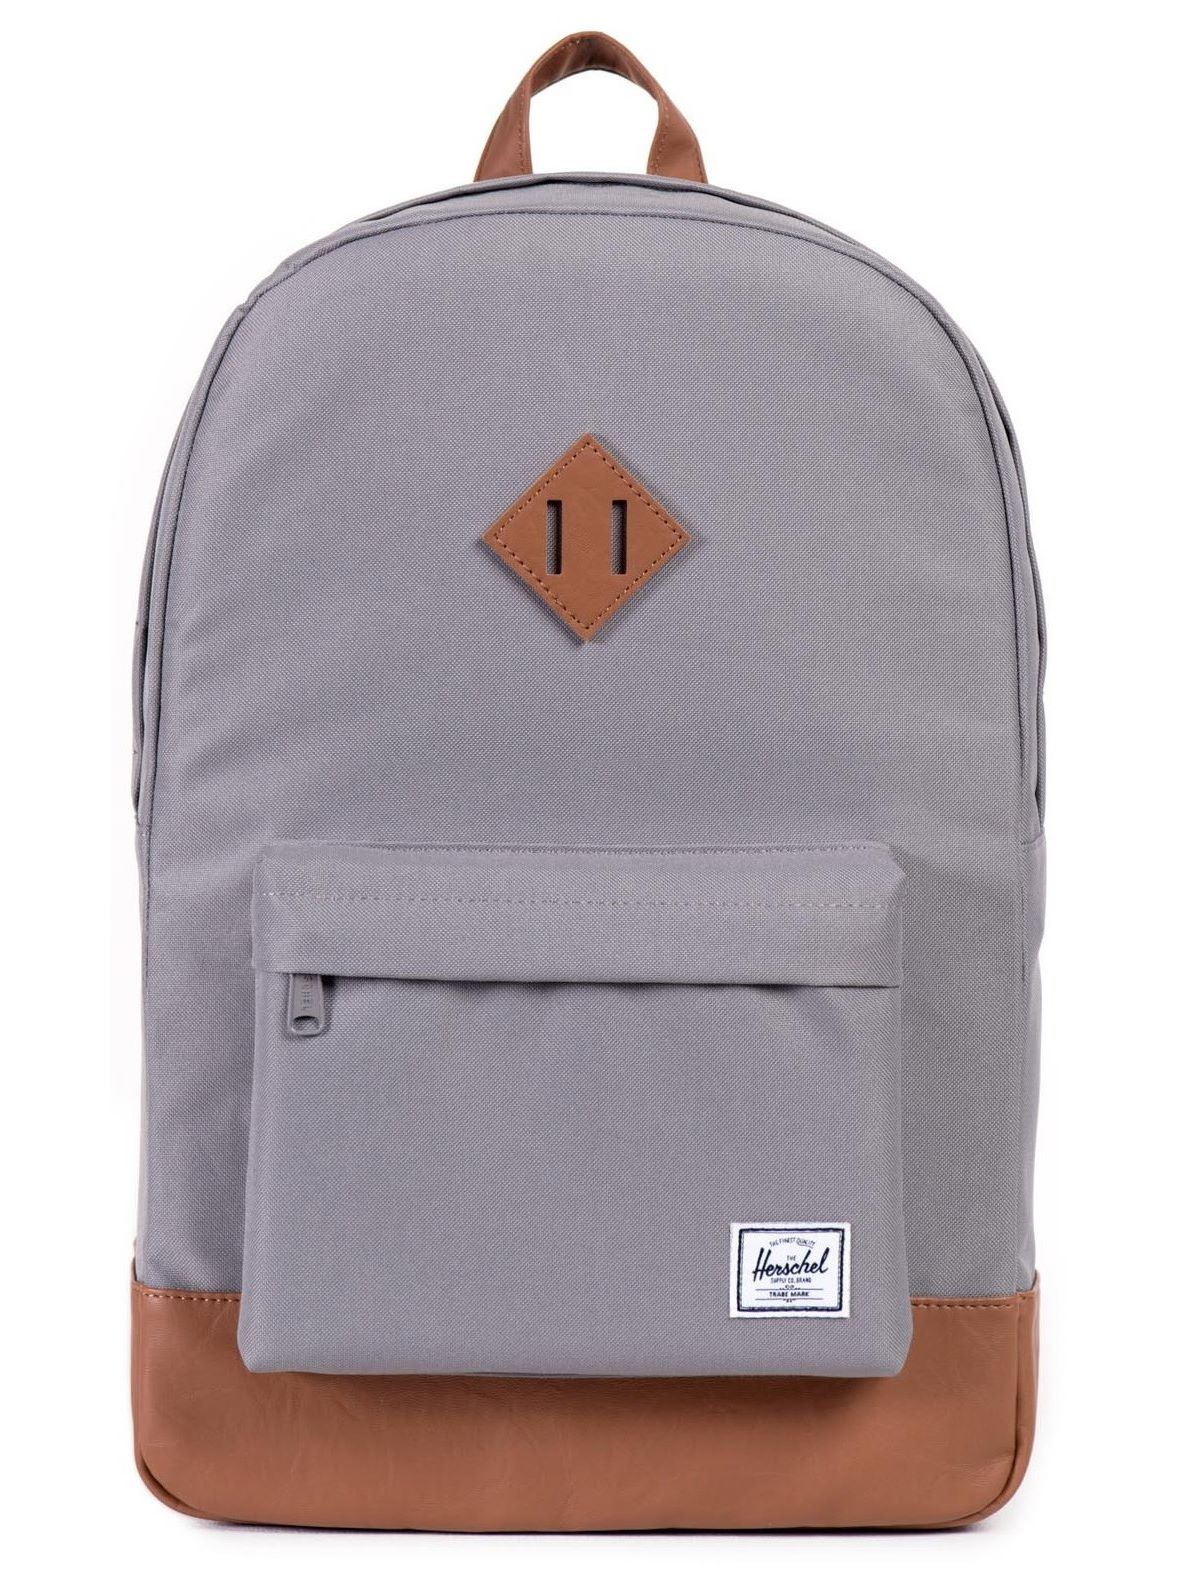 Herschel Heritage Backpack Grey / Tan | Dapper Street